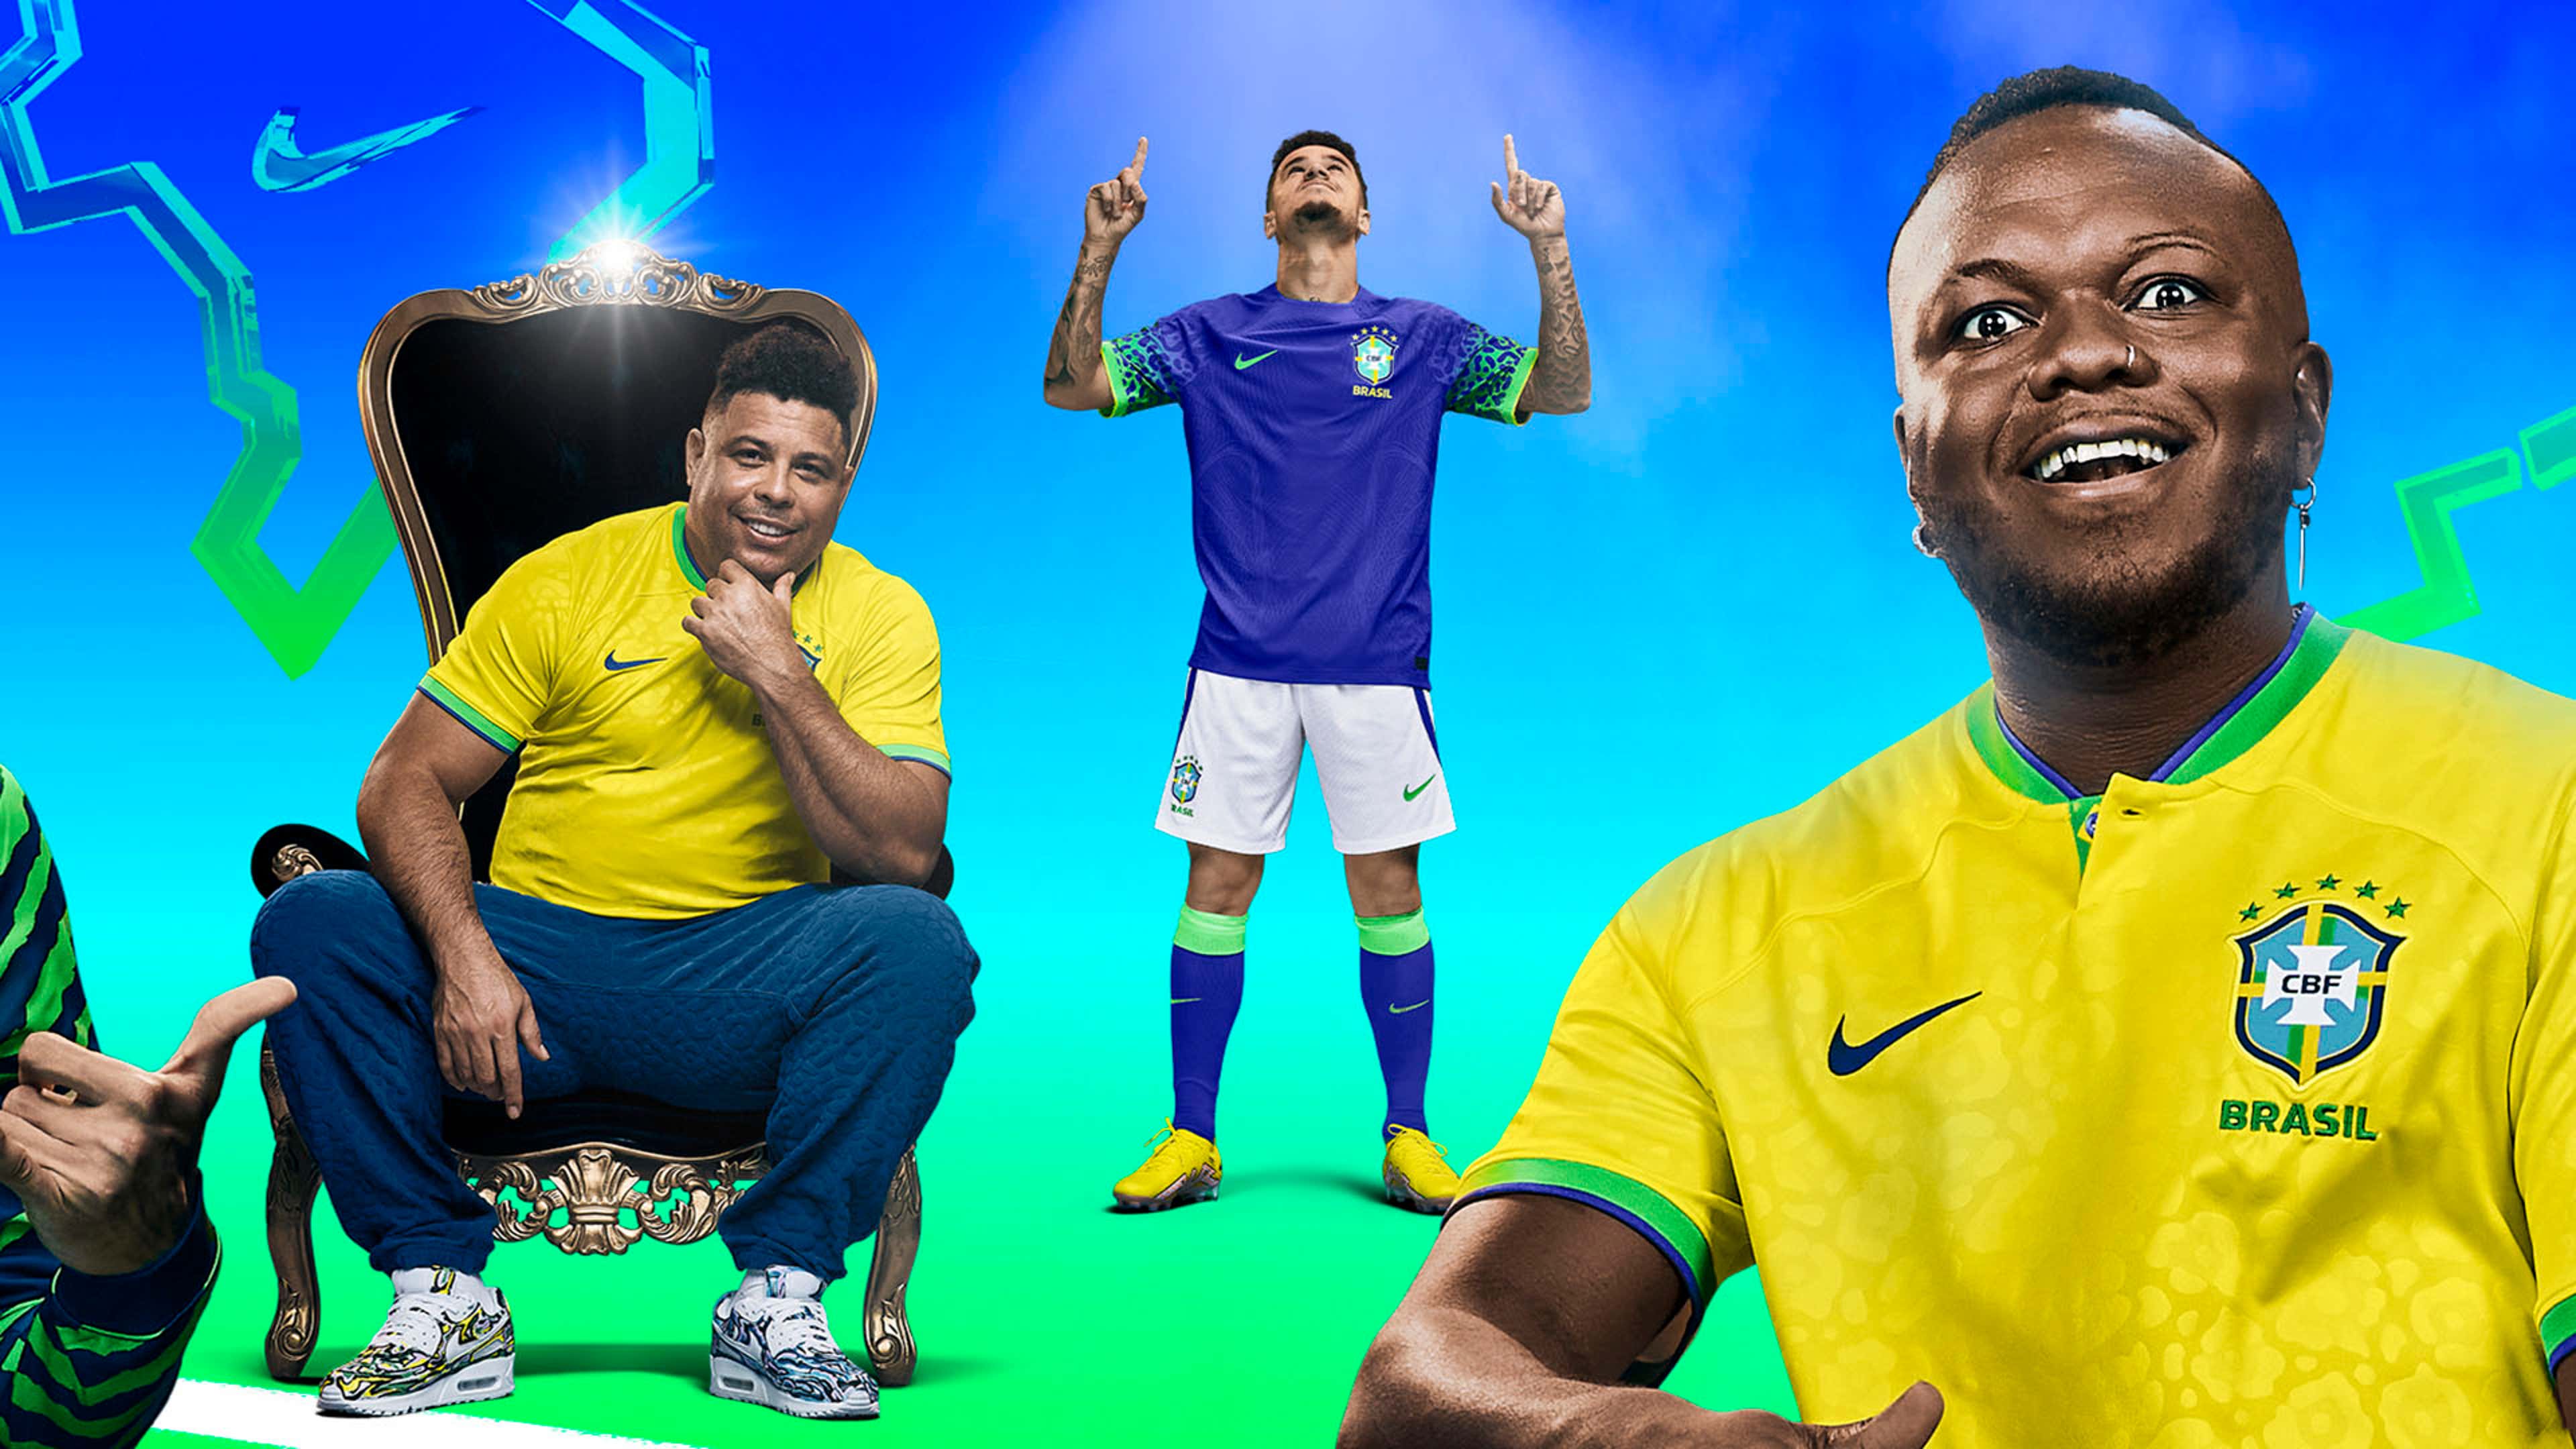 Camisa da seleção brasileira na Copa do Mundo 2022 – preço